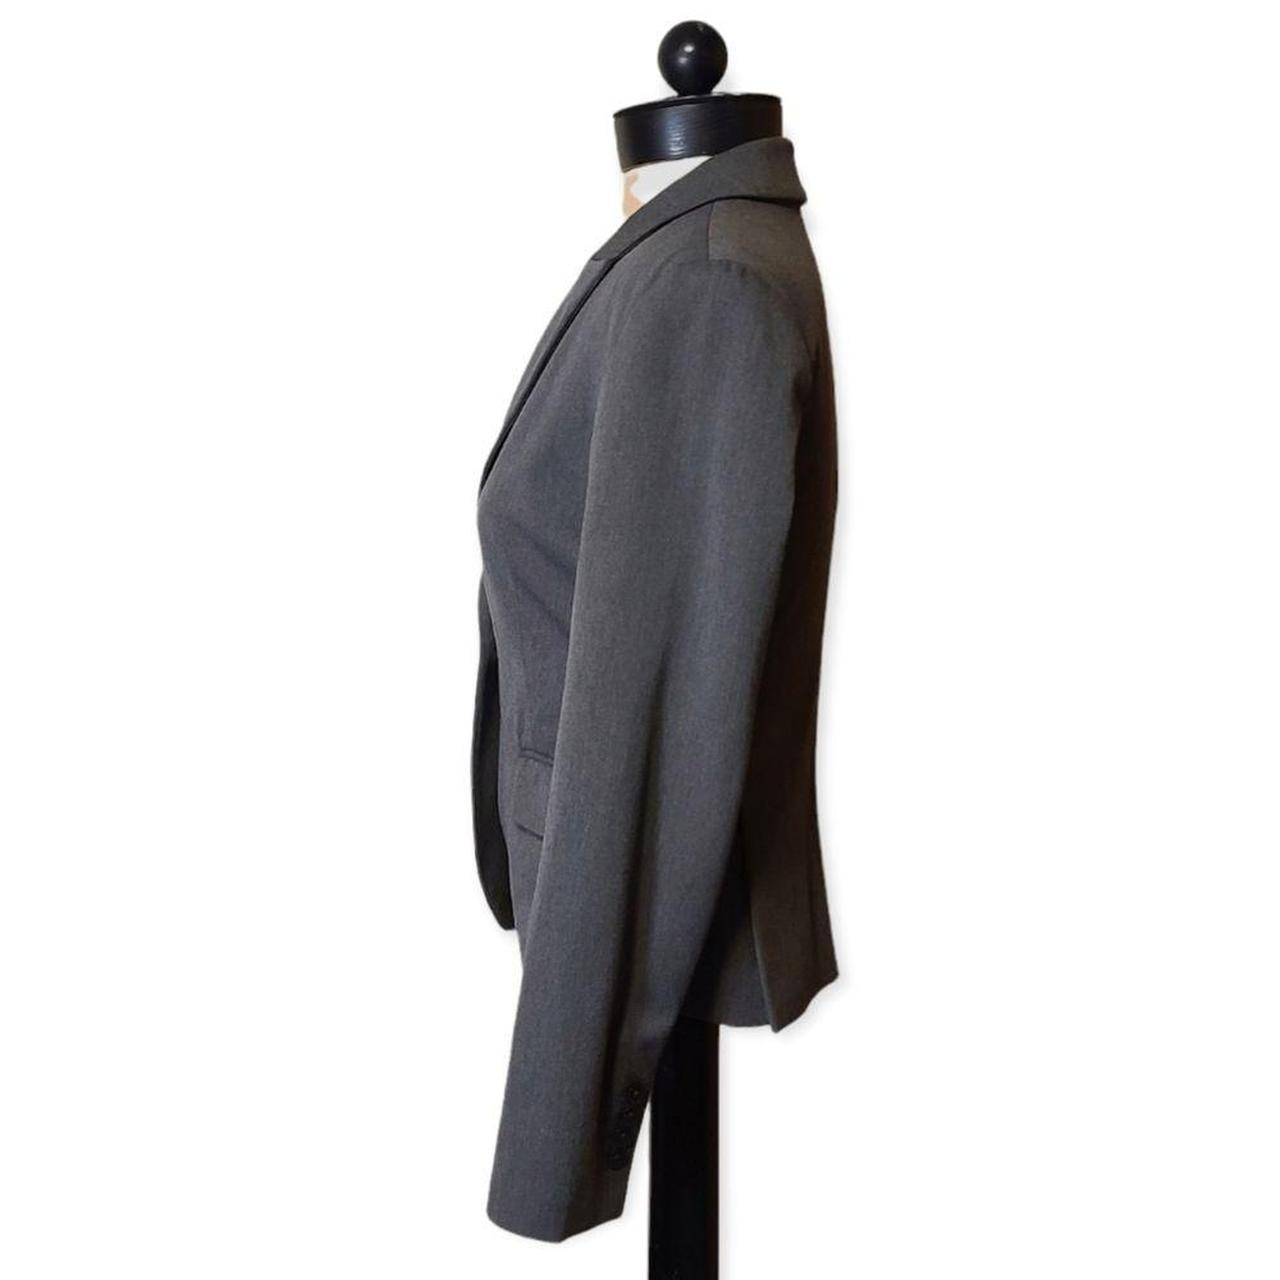 Product Image 2 - Express Grey Blazer Suit Jacket,